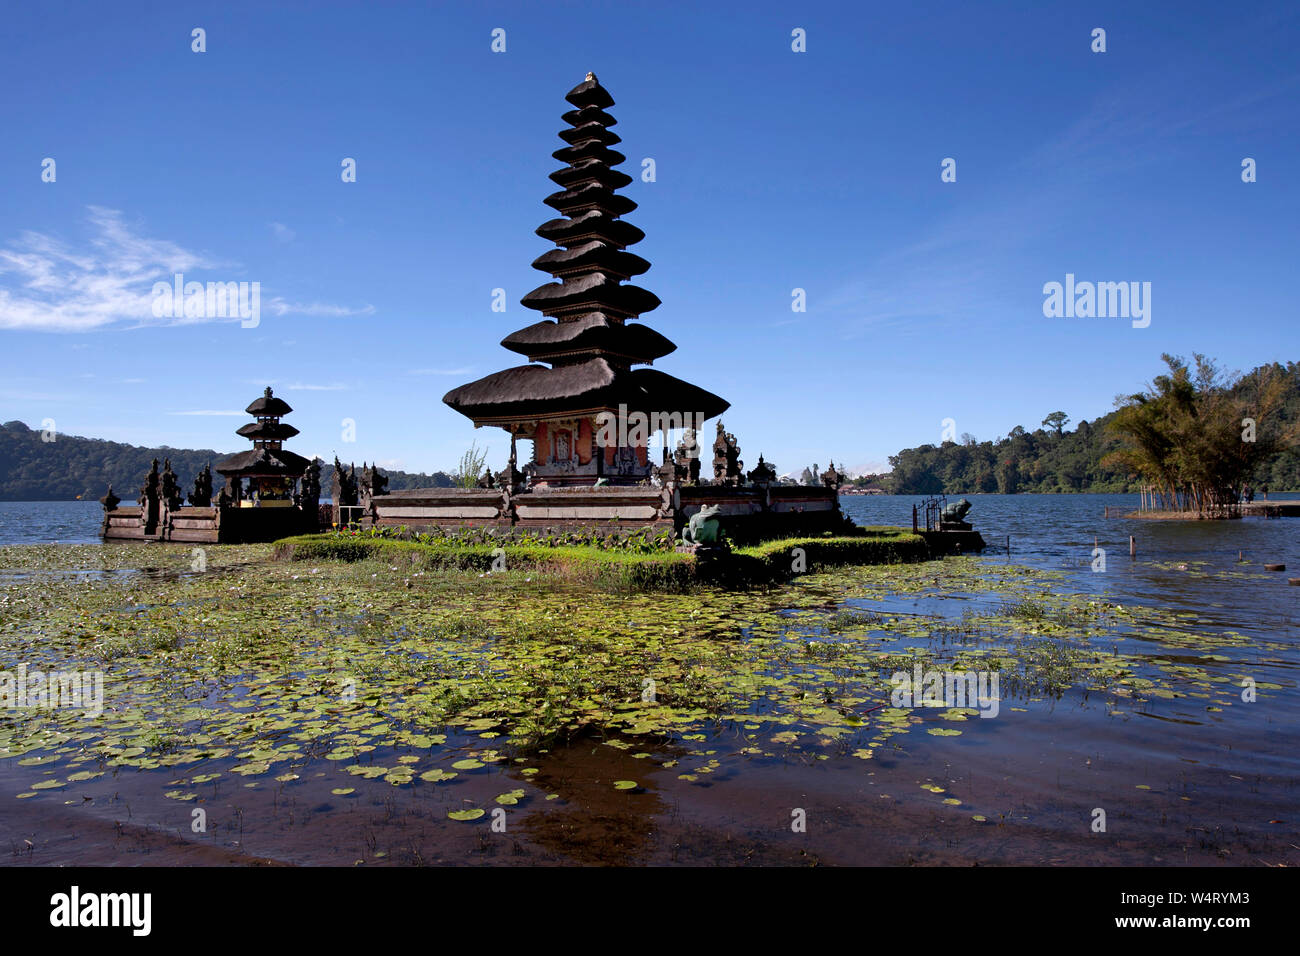 Pura Ulun Danu Beratan Temple on a lake, Bali, Indonesia Stock Photo